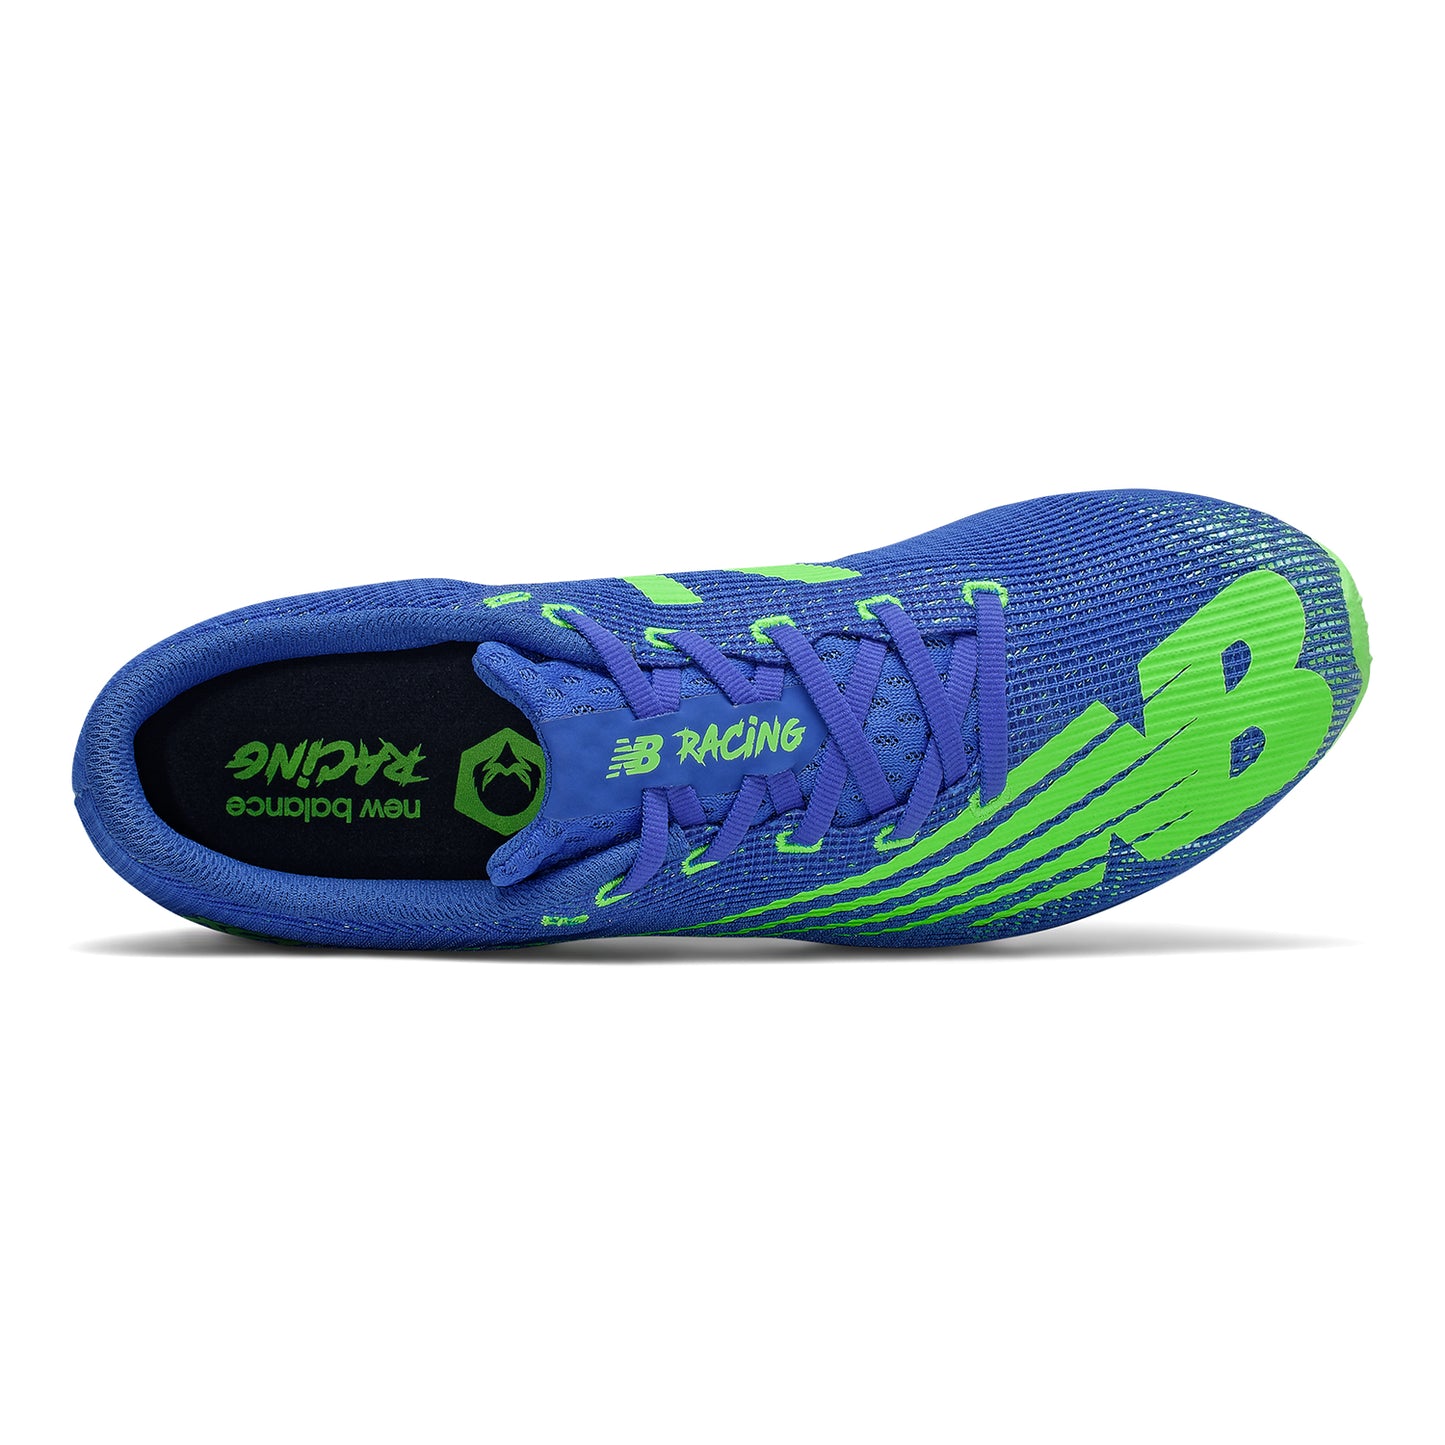 Men's XC Seven v3 Racing Shoe - Cobalt Blue with Lime Green - Regular (D)